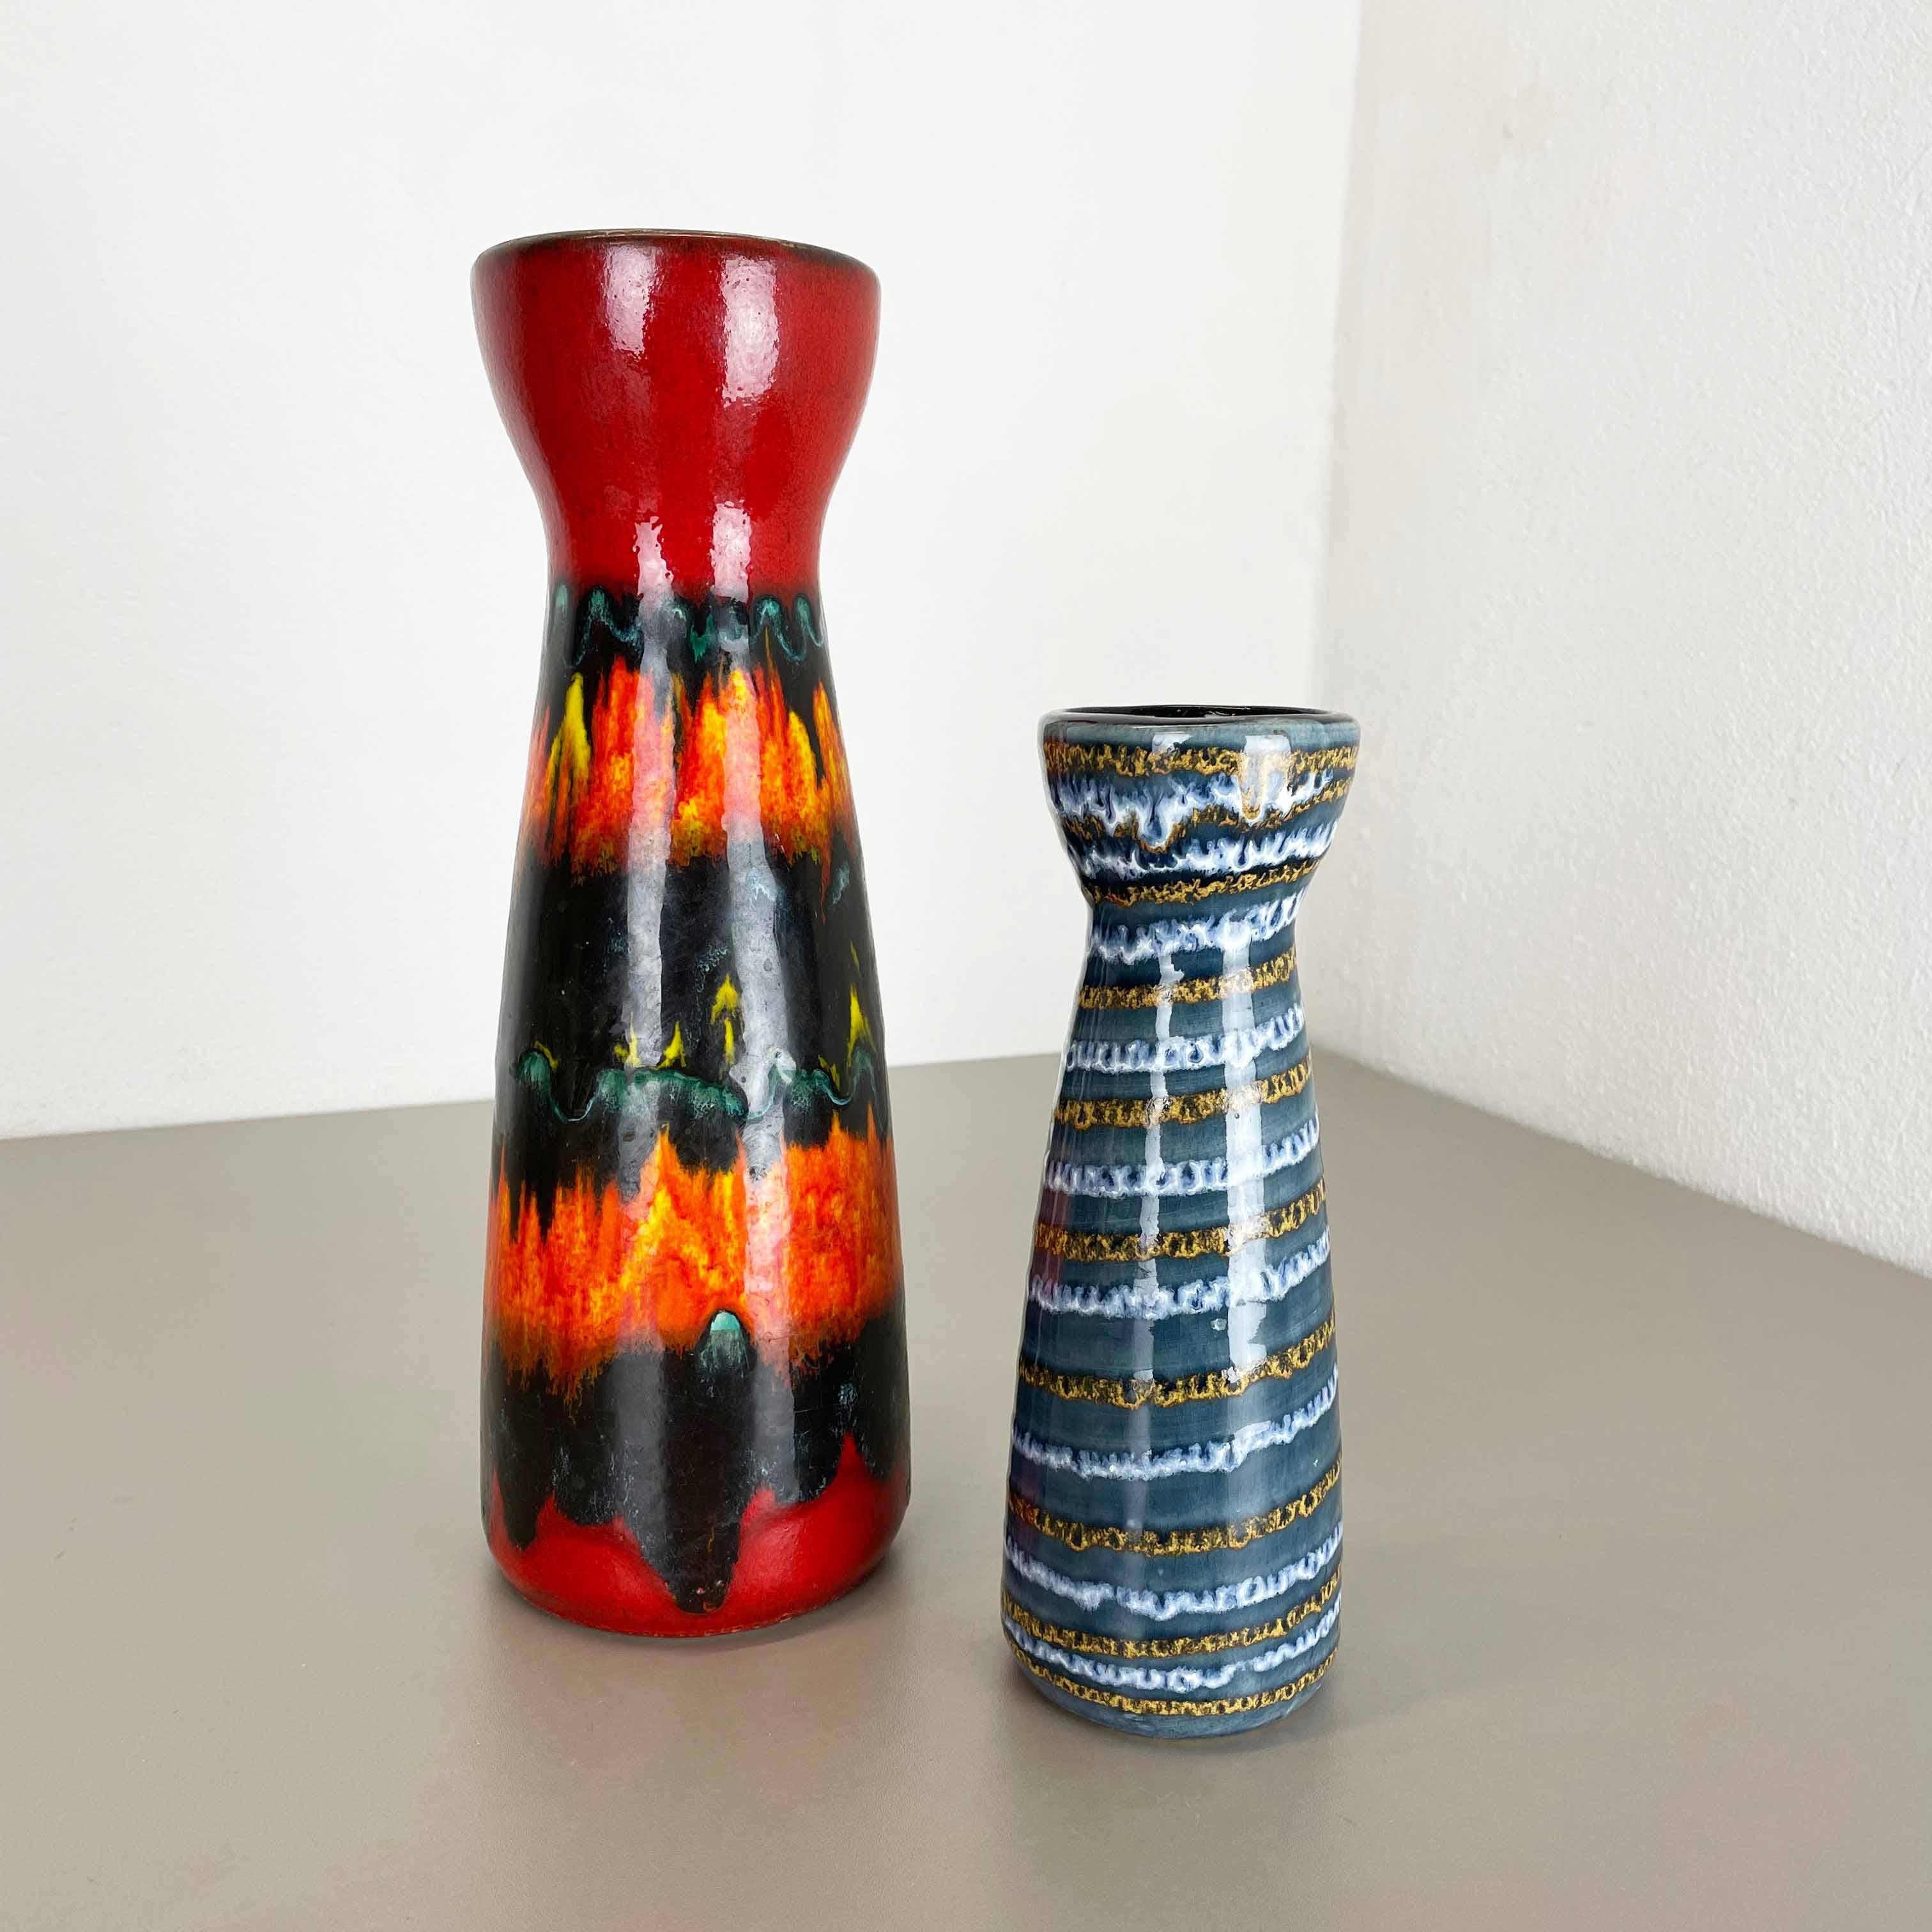 Artikel:

Set aus zwei fetten Lavakunstvasen


Produzent:

Scheurich, Deutschland



Jahrzehnt:

1970s




Diese originalen Vintage-Vasen wurden in den 1970er Jahren in Deutschland hergestellt. Sie ist aus Keramik in fetter